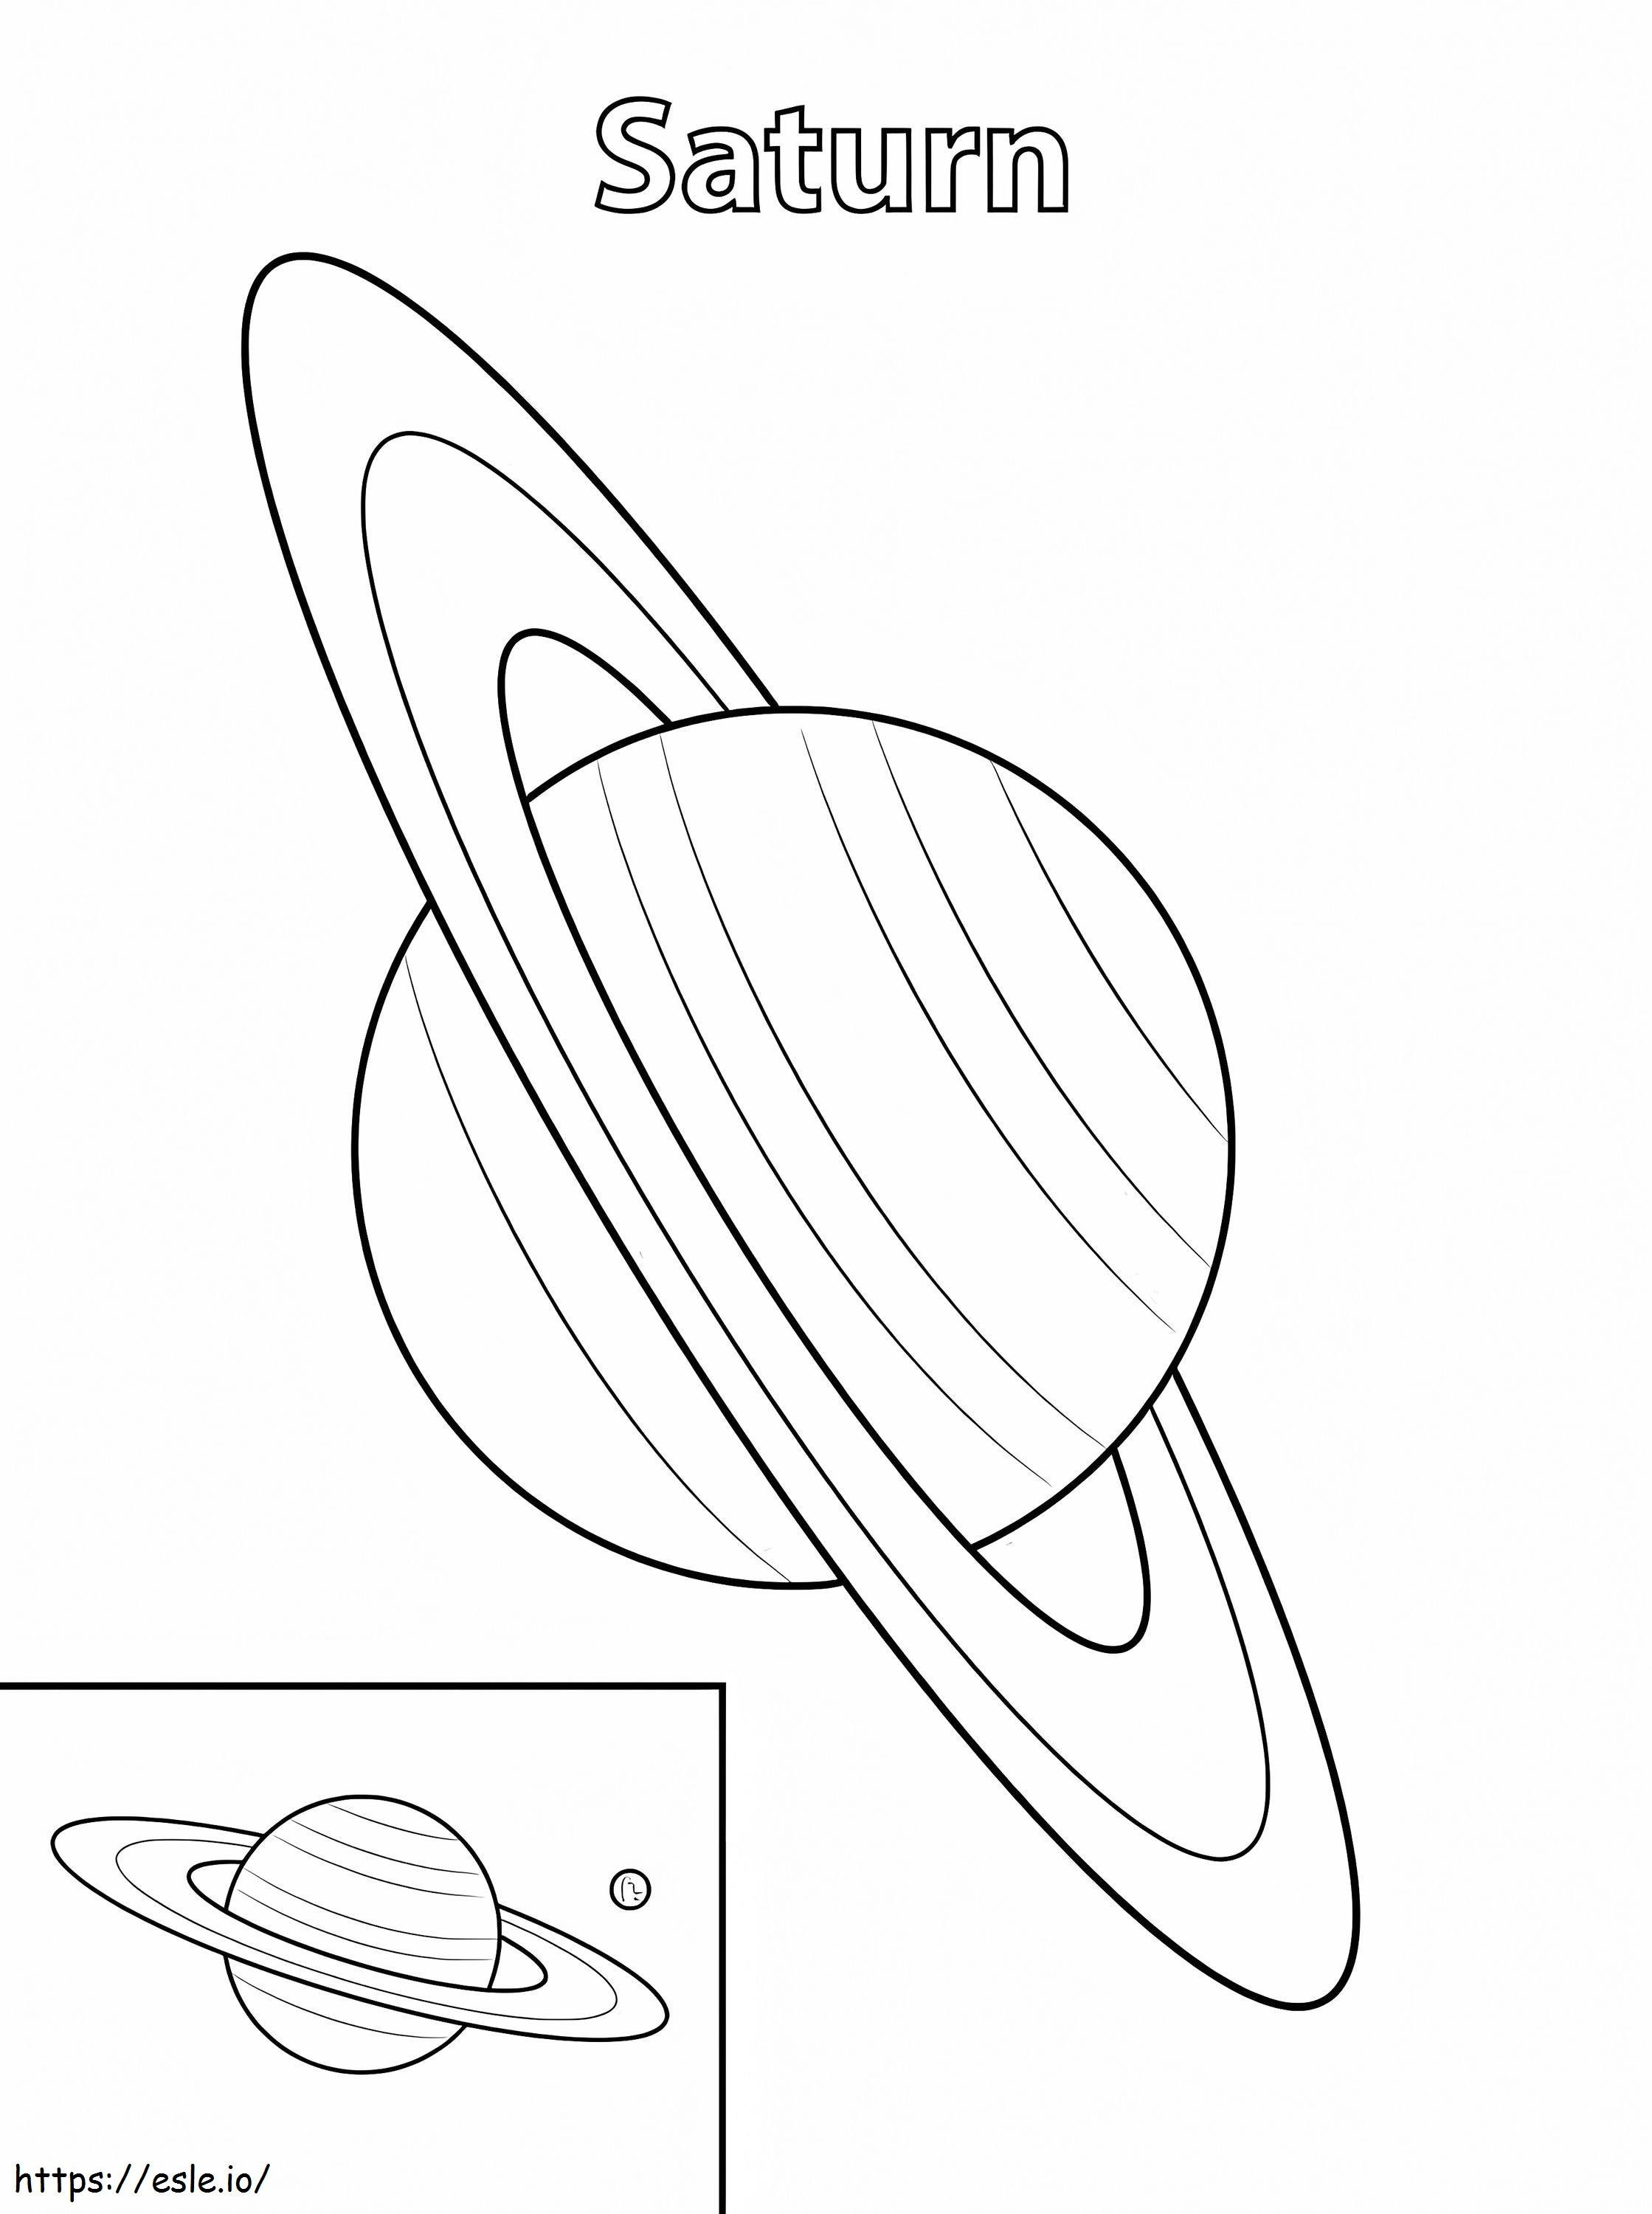 Planeet Saturnus kleurplaat kleurplaat